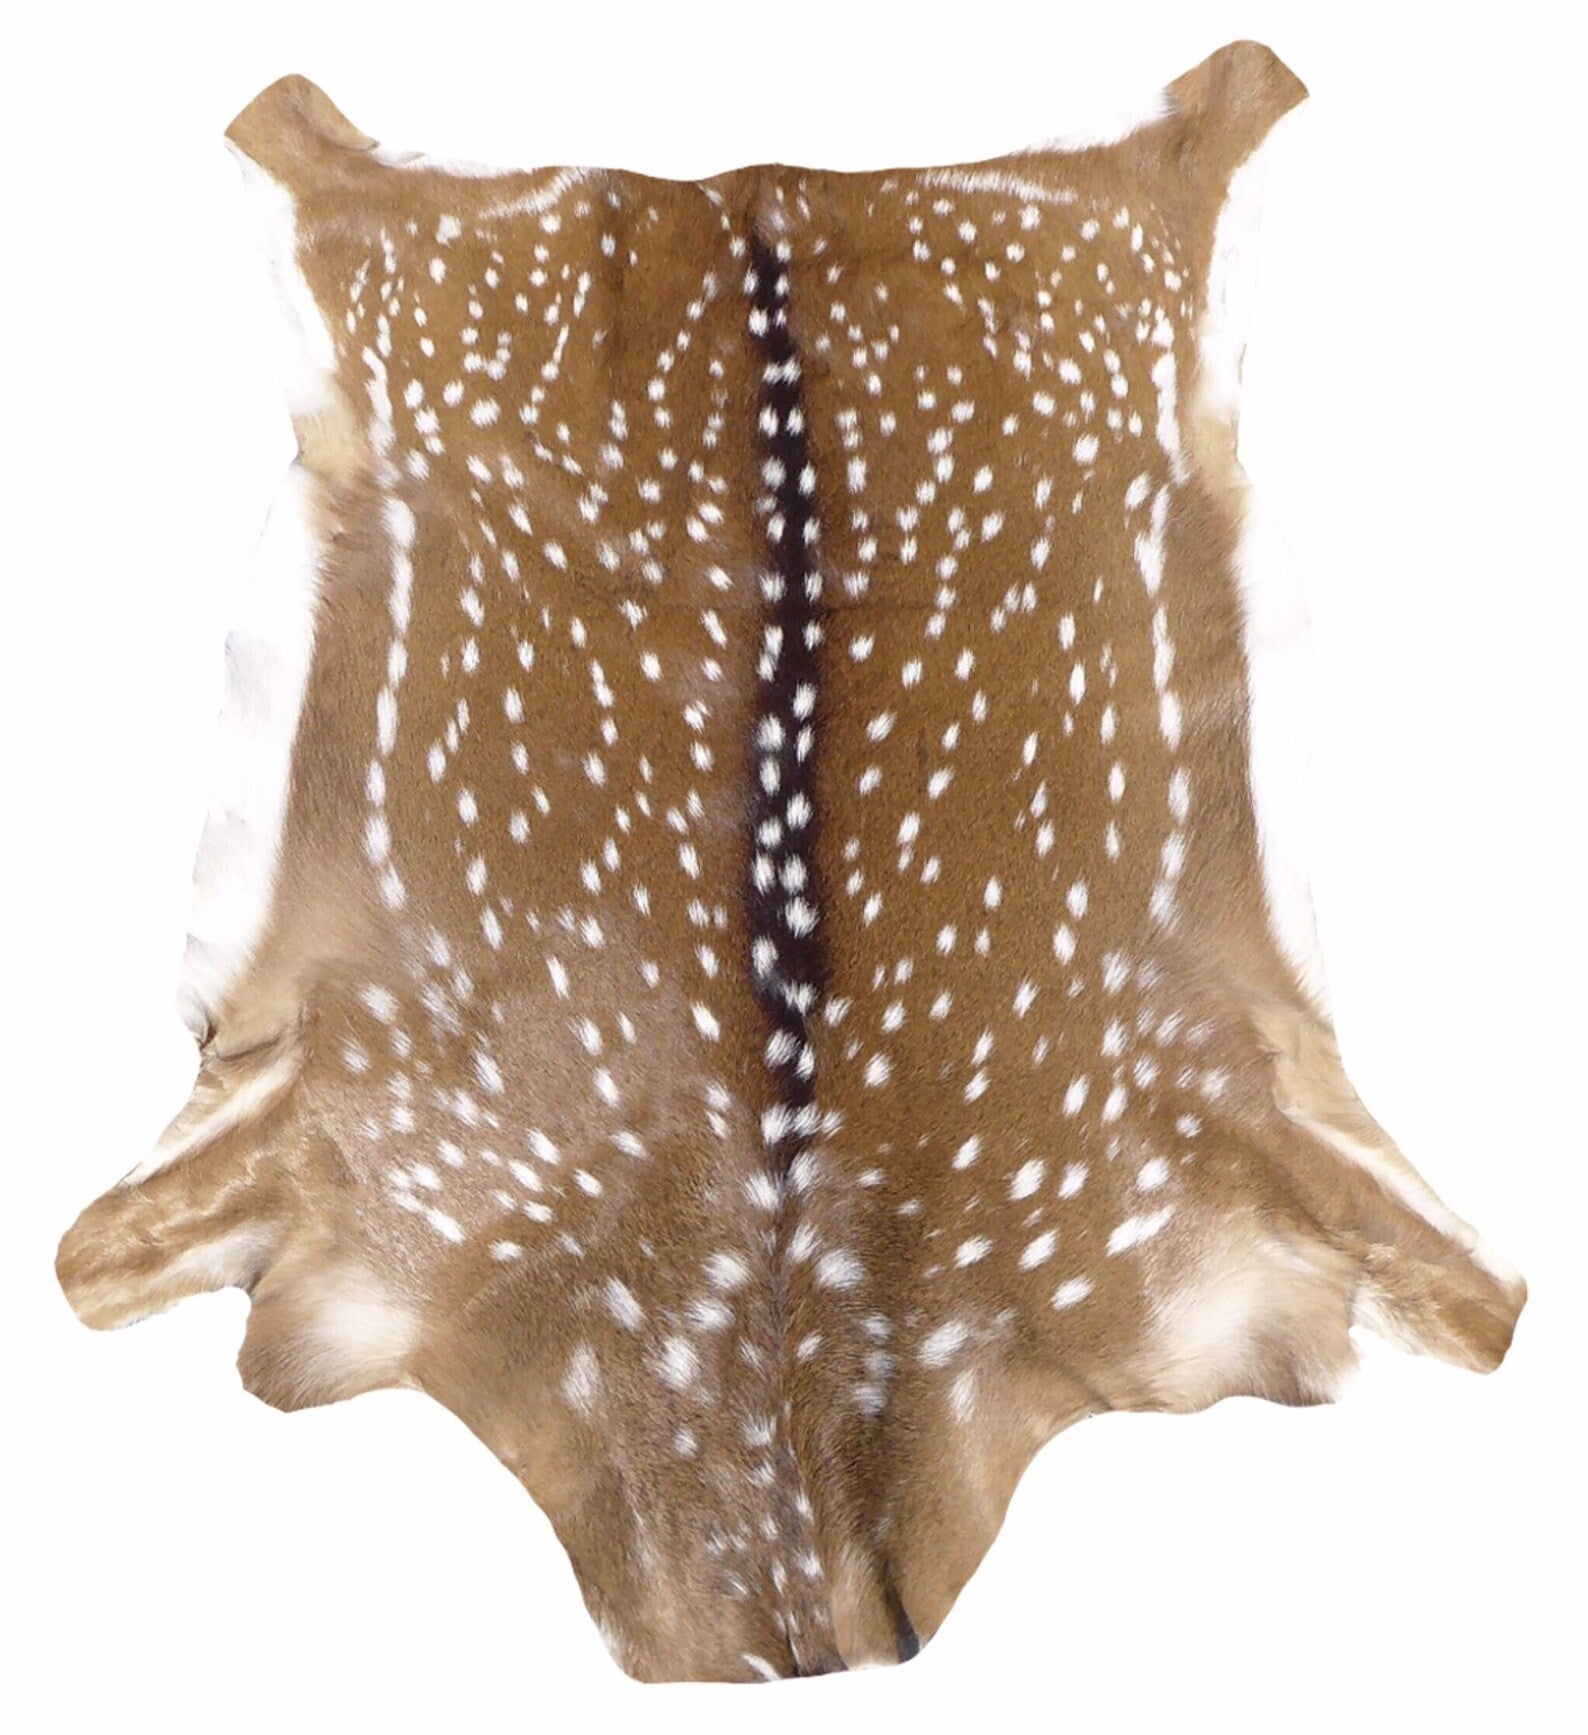 Axis Deer Skin – Wildlife Etc